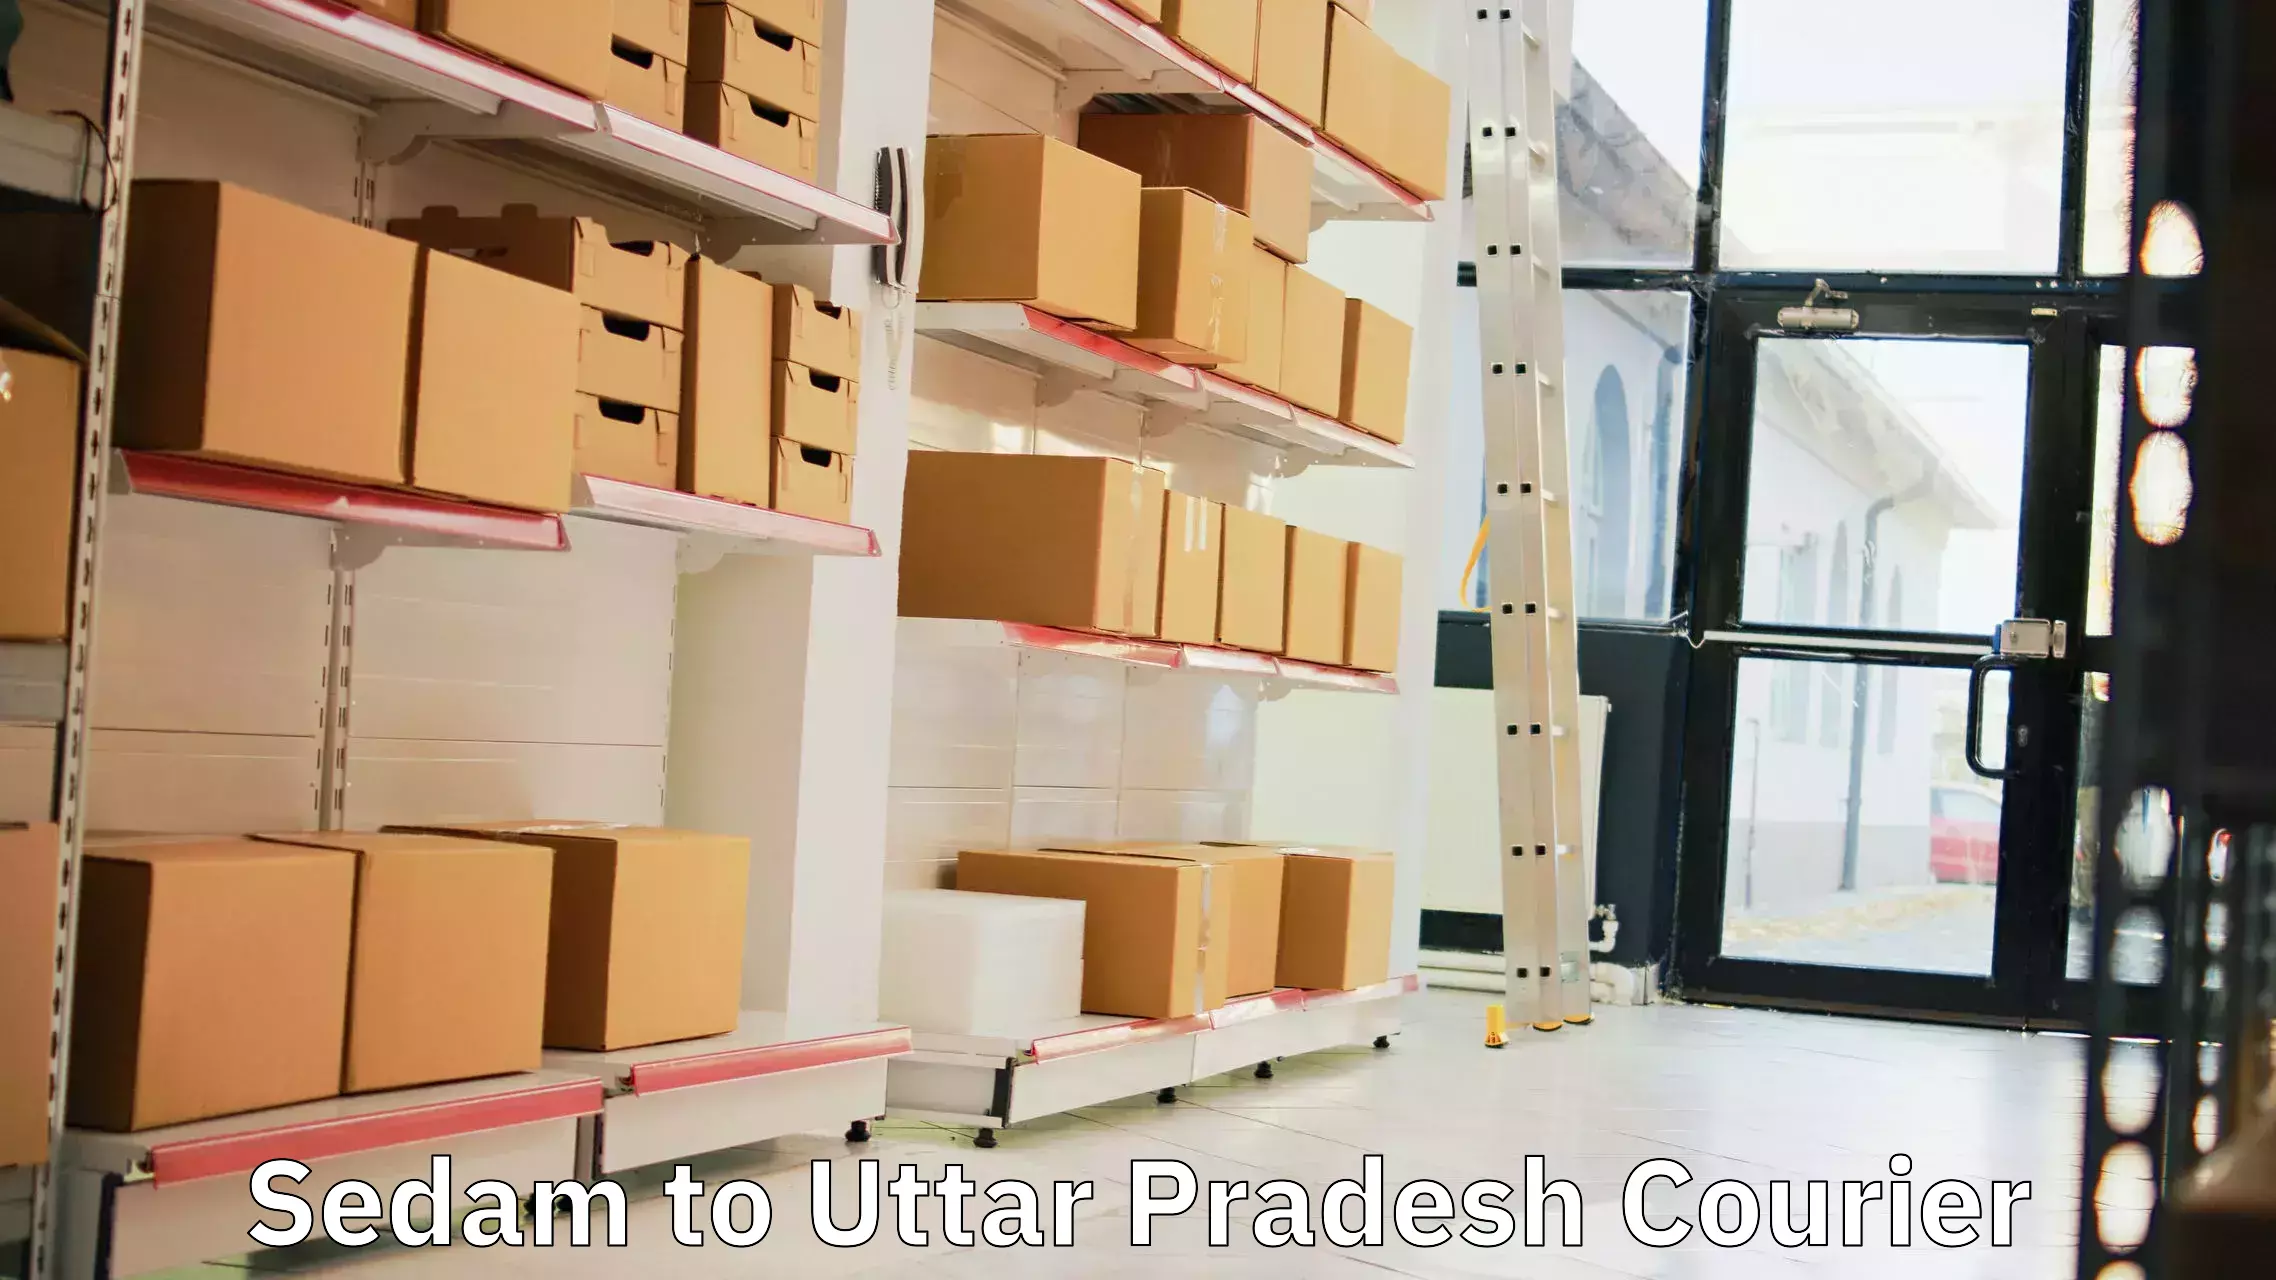 Customized shipping options Sedam to Uttar Pradesh